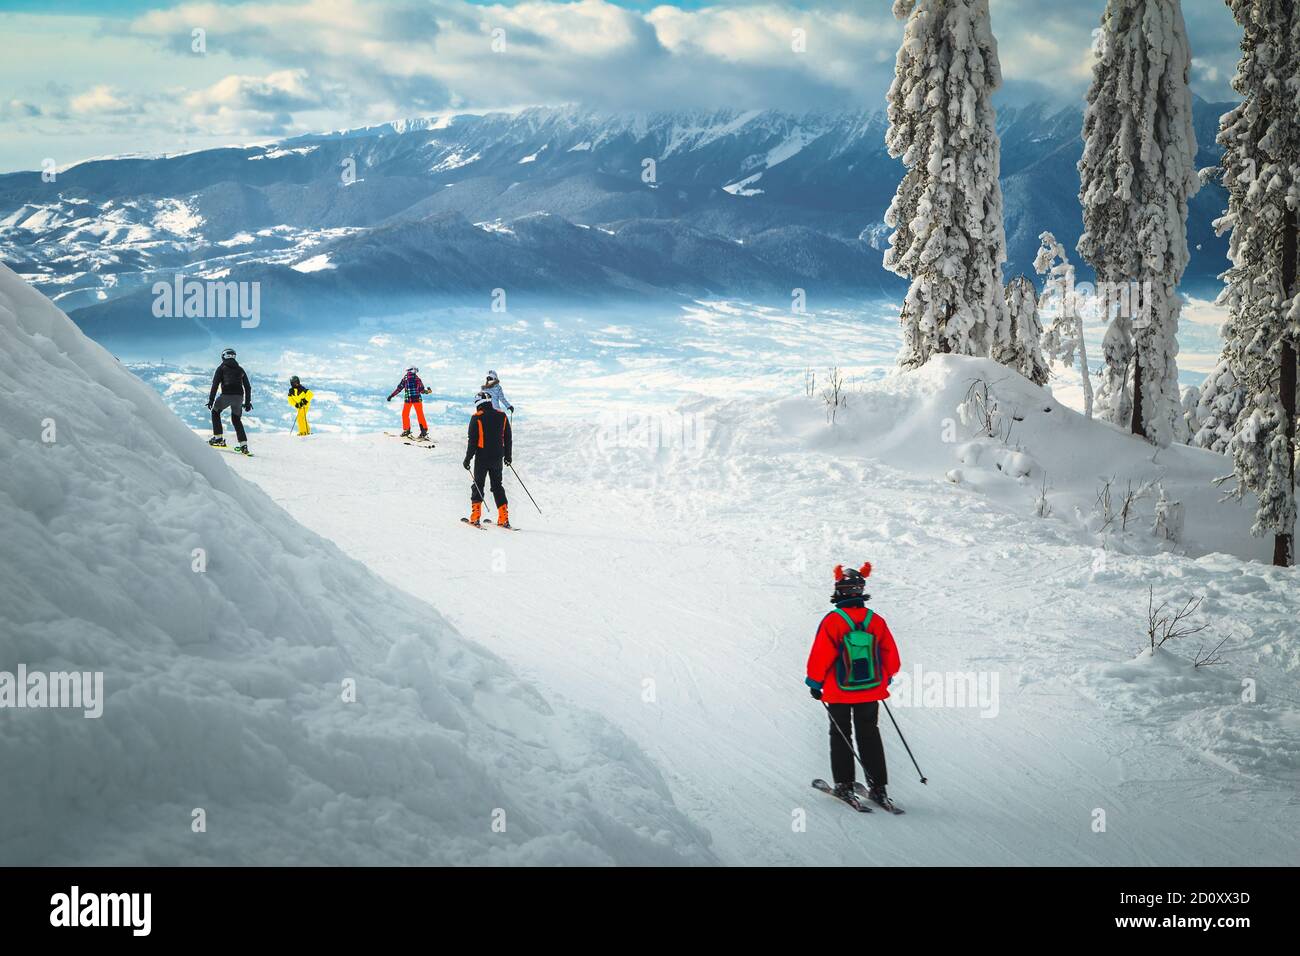 Superbes arbres enneigés et paysages d'hiver. Skieurs actifs ski alpin à Poiana Brasov station de ski, Transylvanie, Roumanie, Europe Banque D'Images